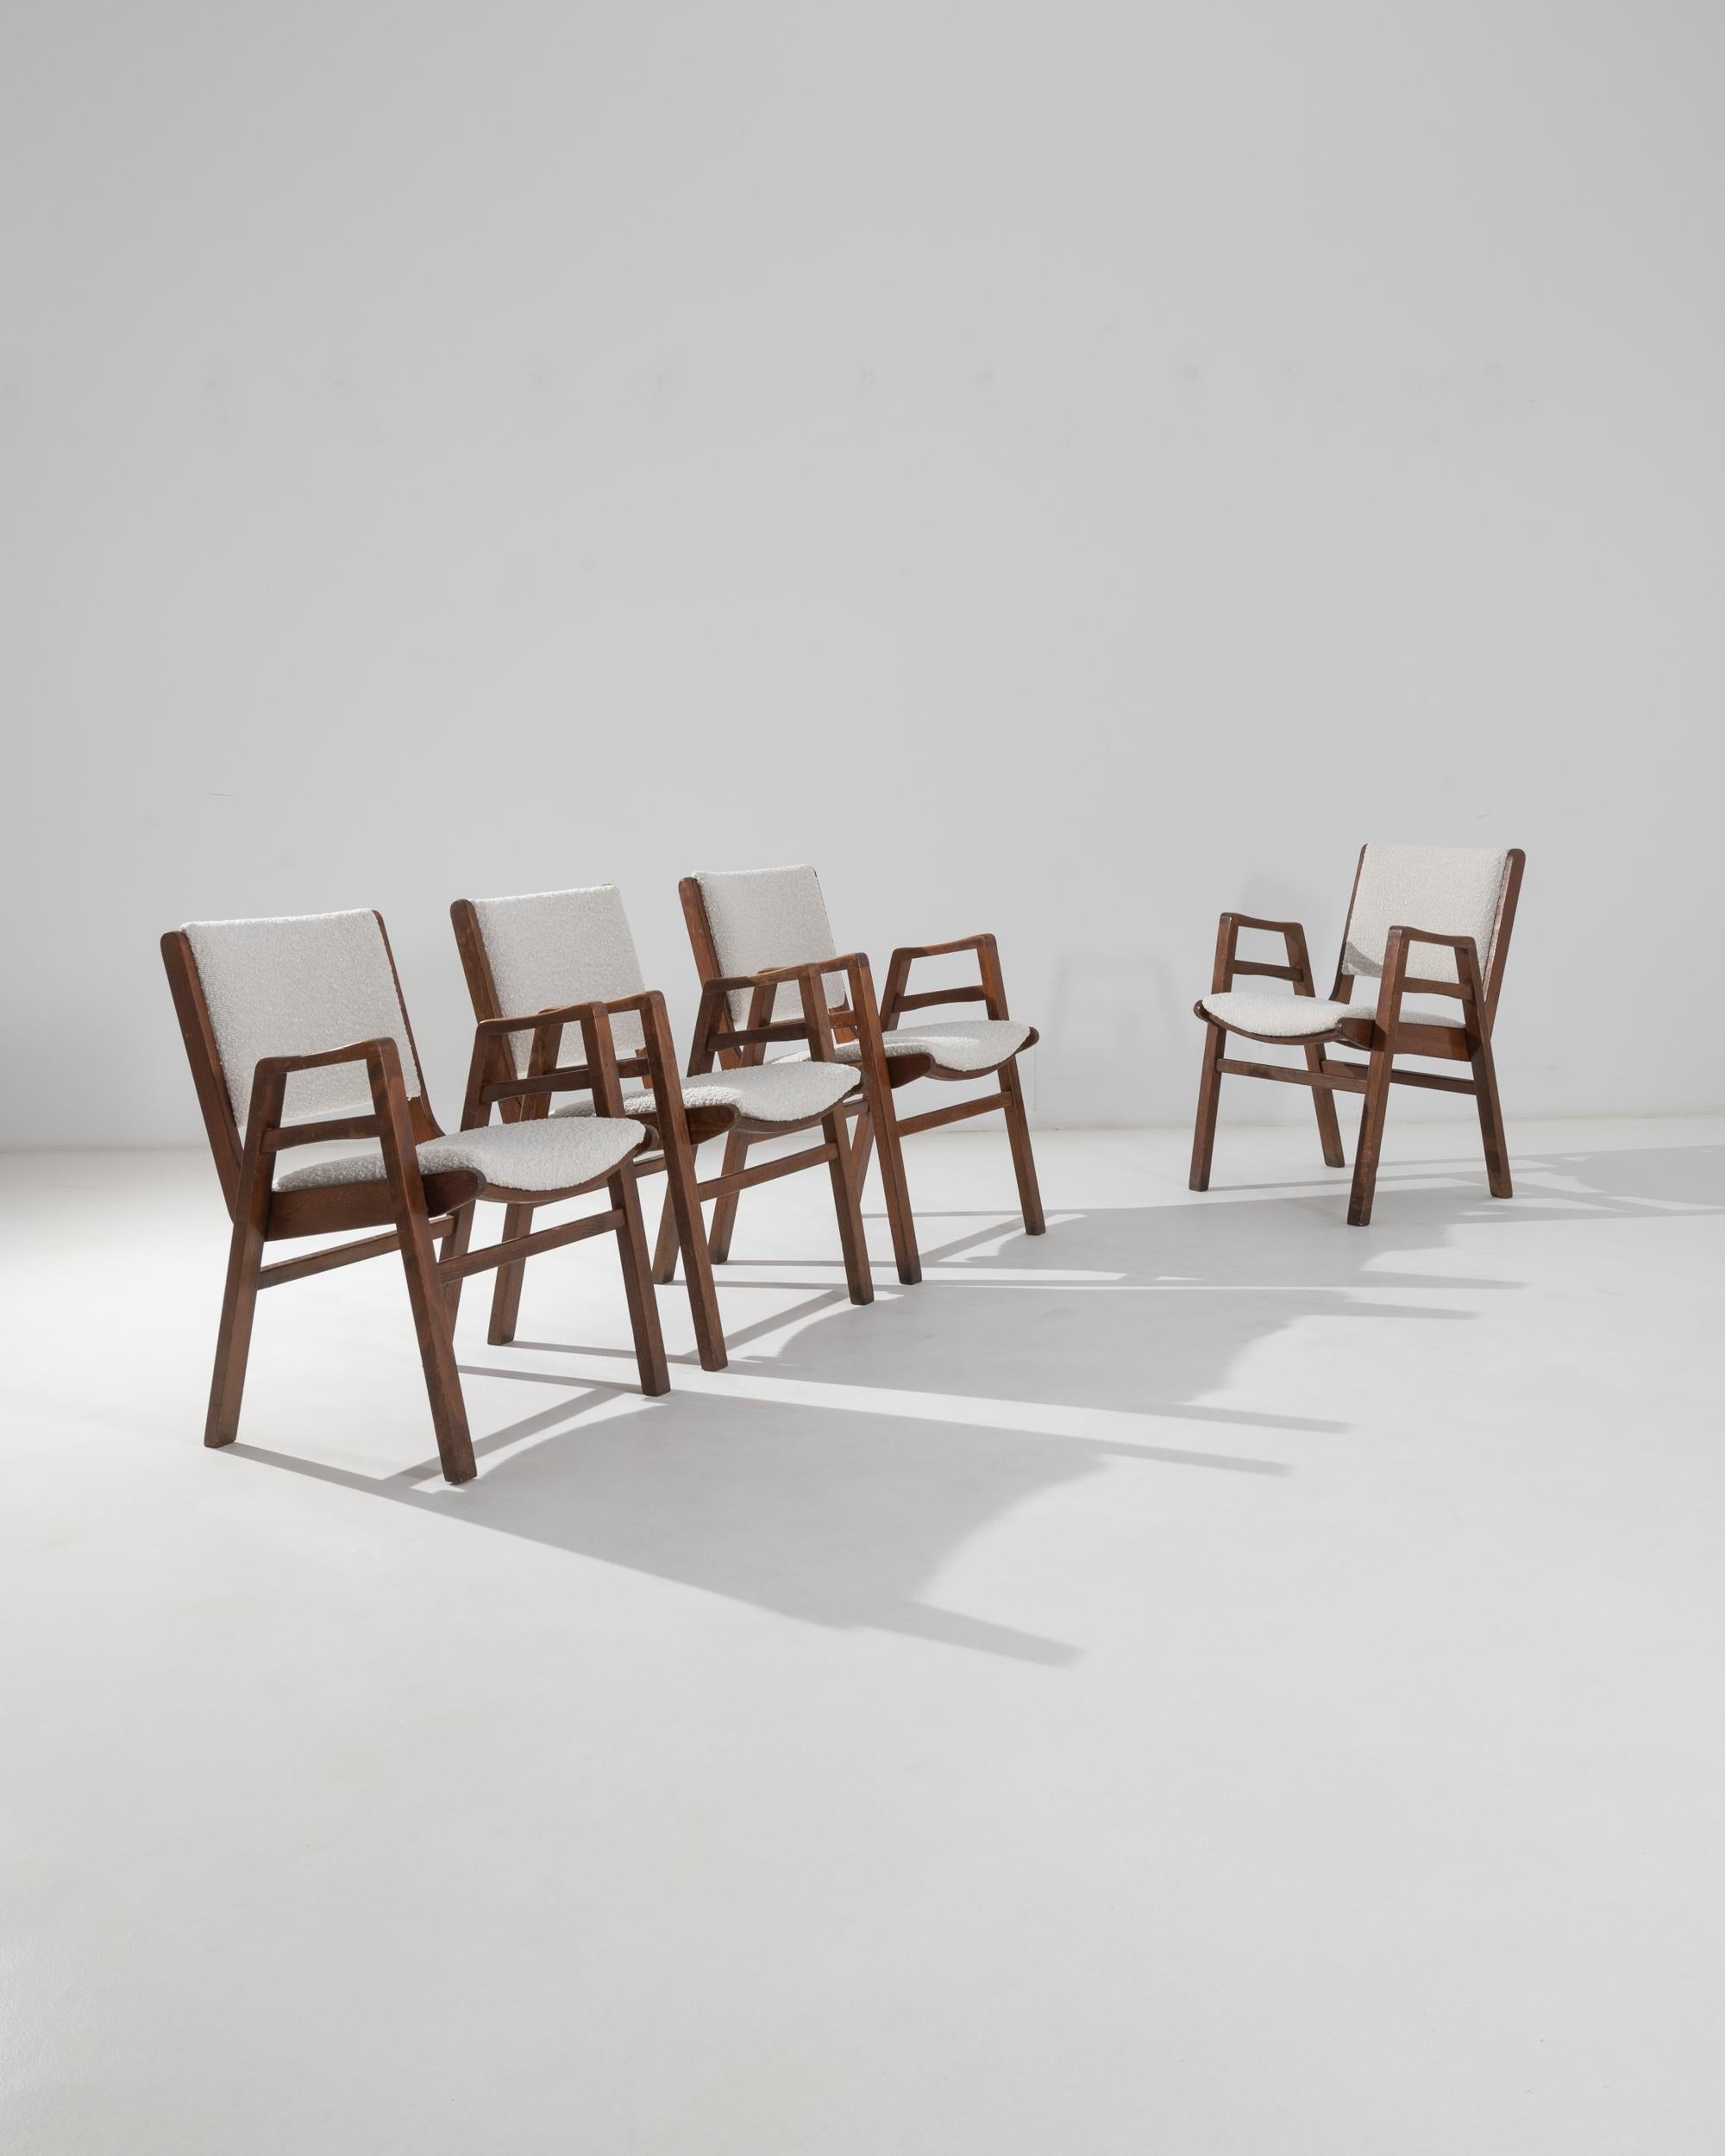 Dieses schöne Set aus vier Holzsesseln verkörpert den Stil der tschechischen Moderne. Die in den 1950er Jahren hergestellte Form ist sowohl grafisch als auch ergonomisch: Geometrische A-Rahmenbeine schaffen eine kühne Silhouette, während die weiche